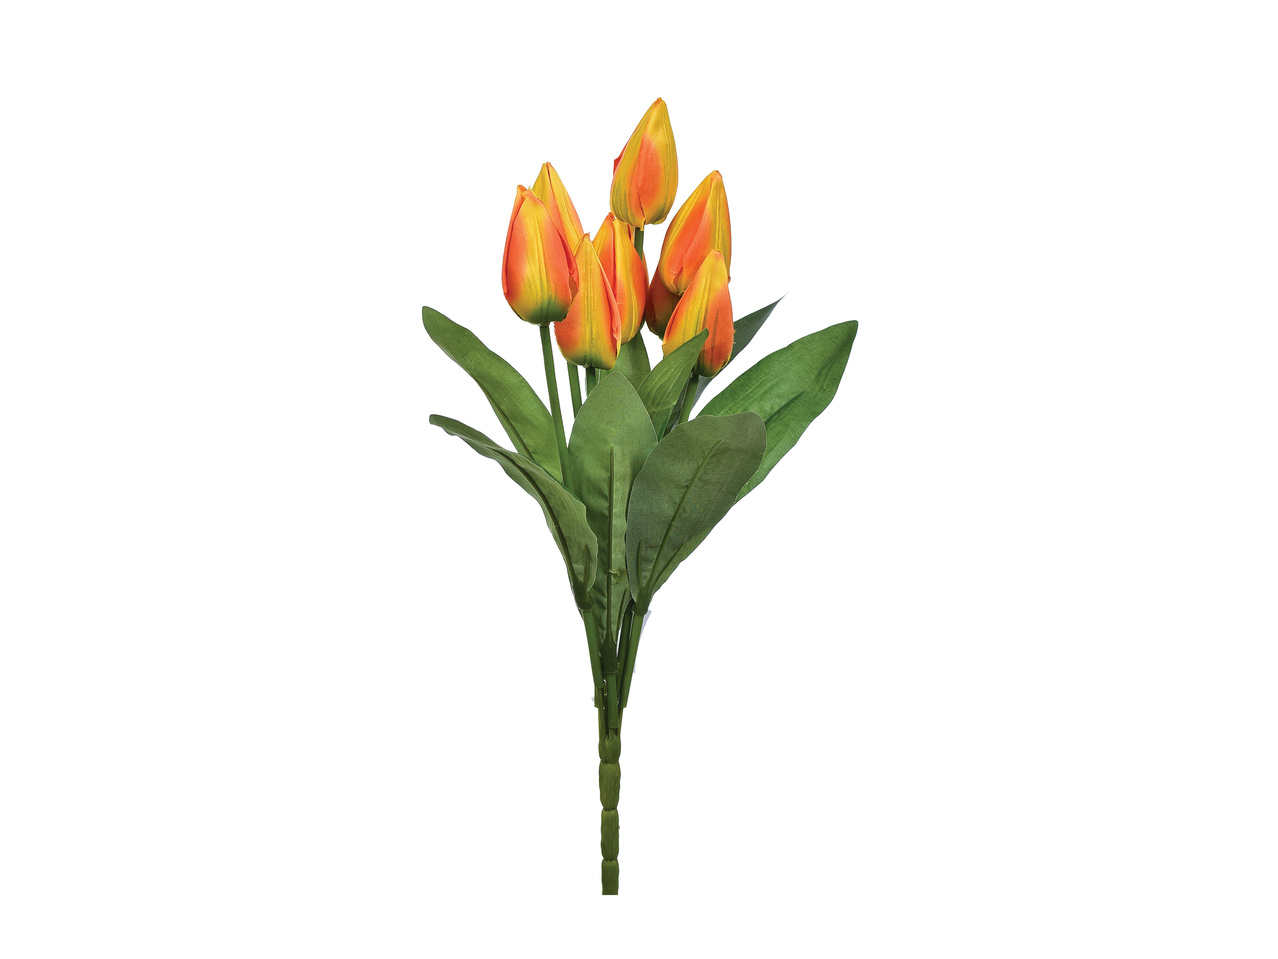 Bukiet 9 sztucznych tulipanów , cena 19,99 PLN 
Bukiet 9 sztucznych tulipanów ...